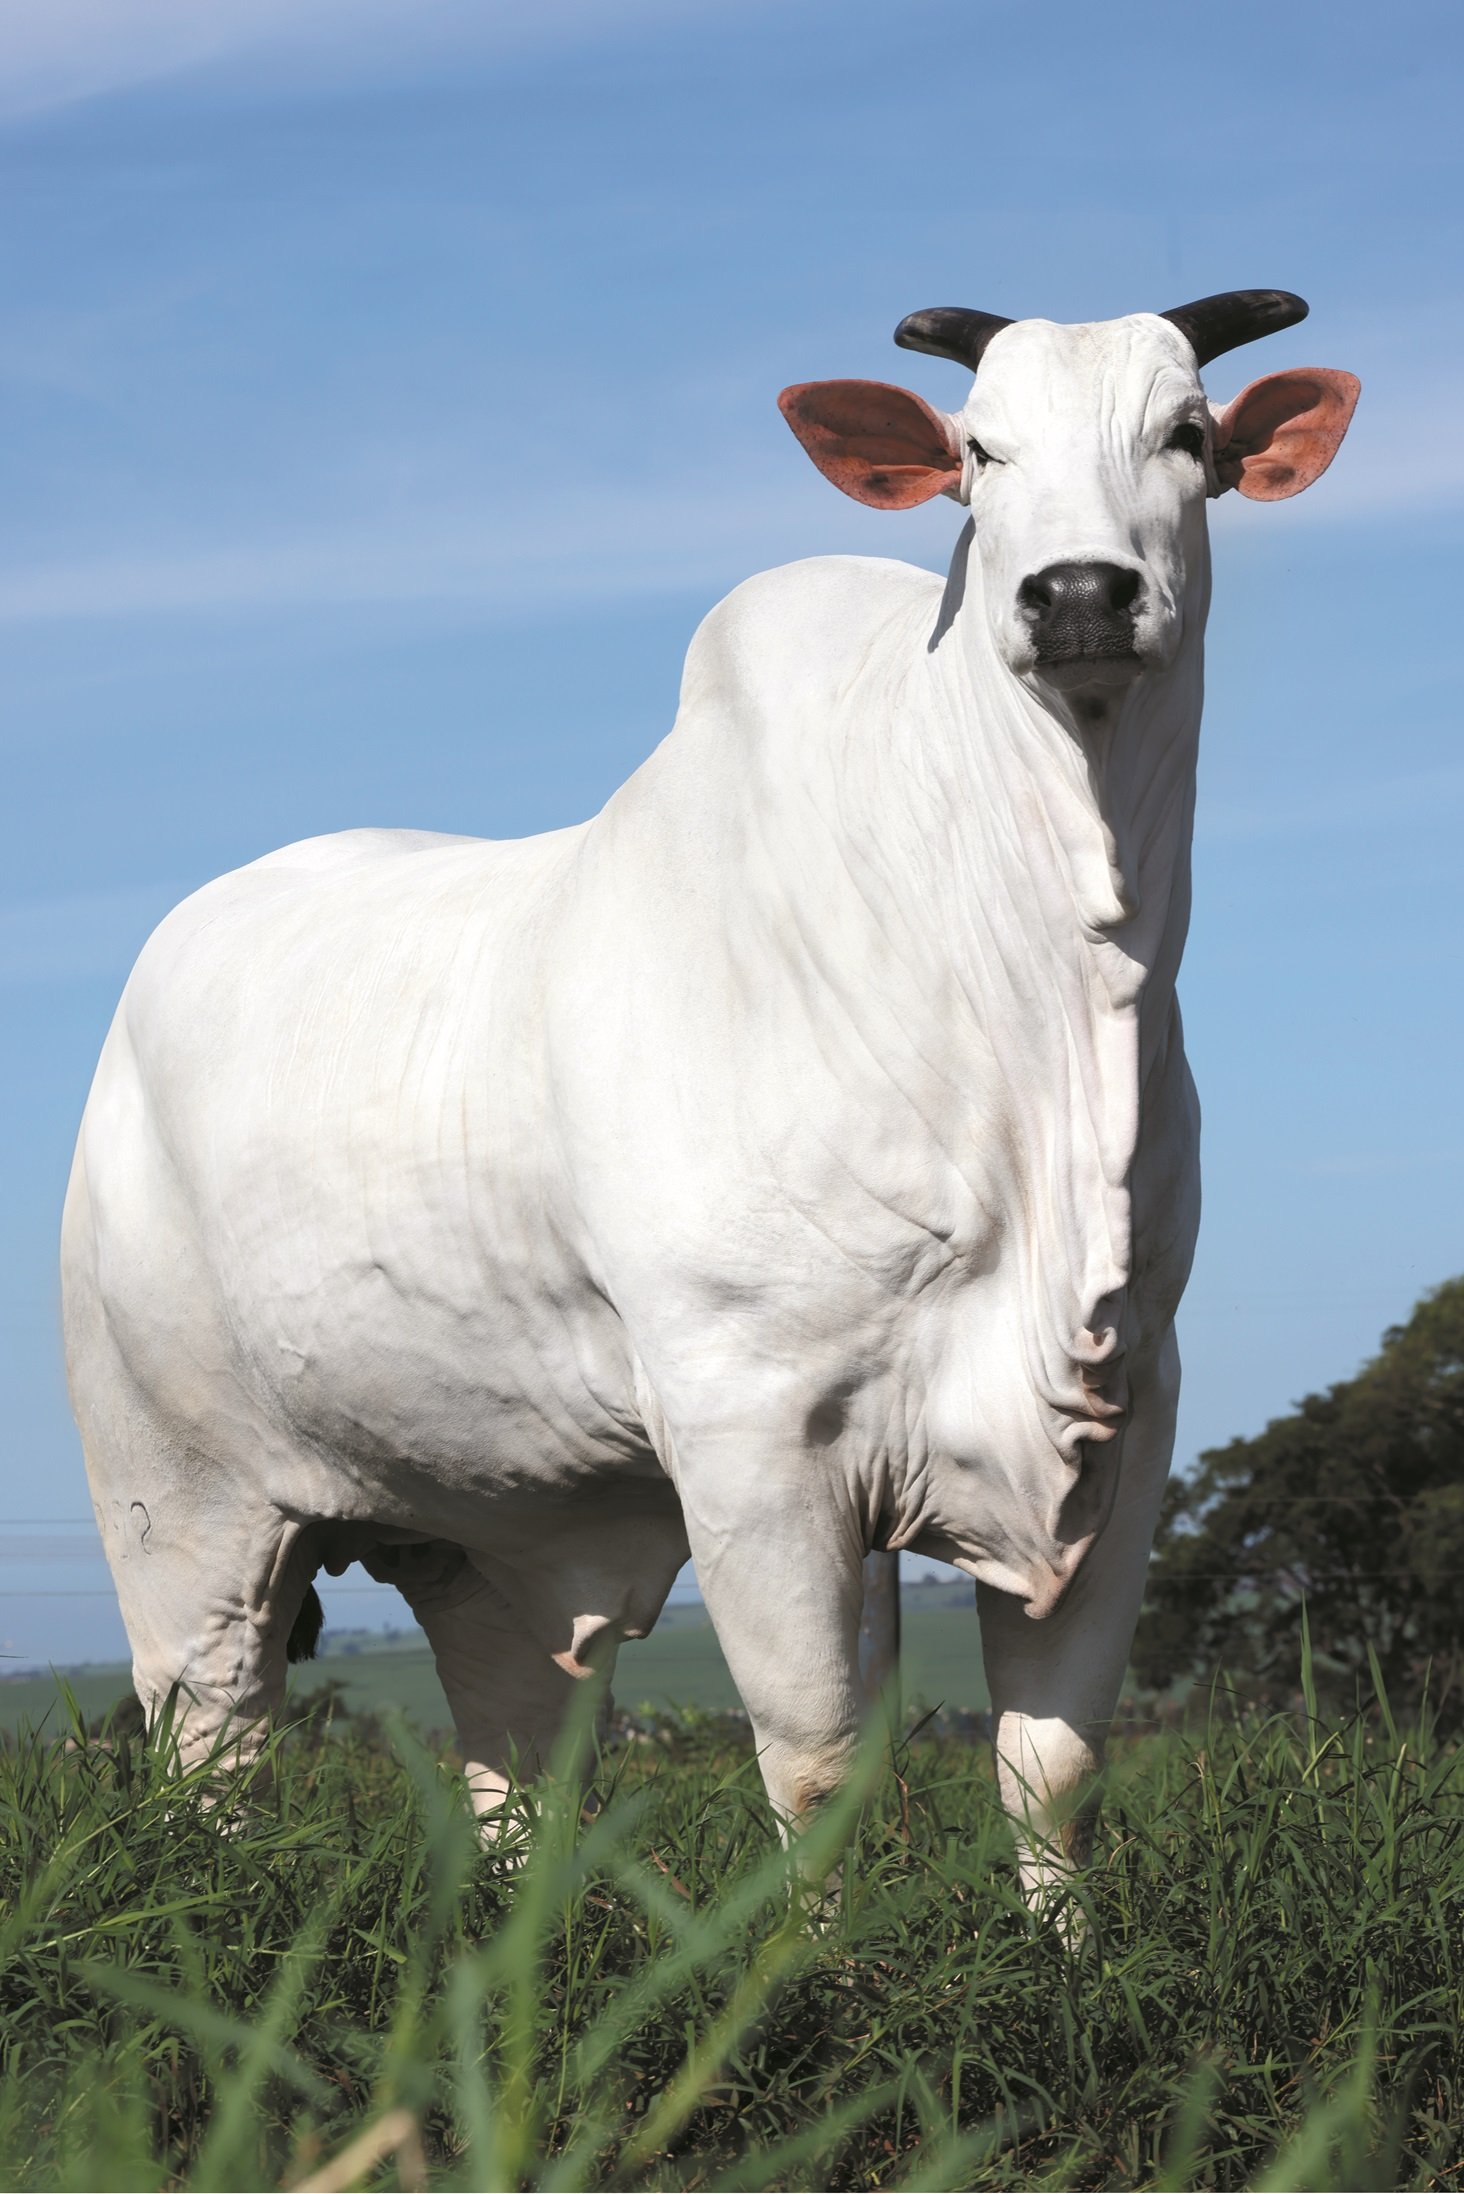 Vaca Donna FIV CIAV, Melhor Matriz do Ranking Nelore 2023, à venda no Leilão Elo de Raça, na Expozebu